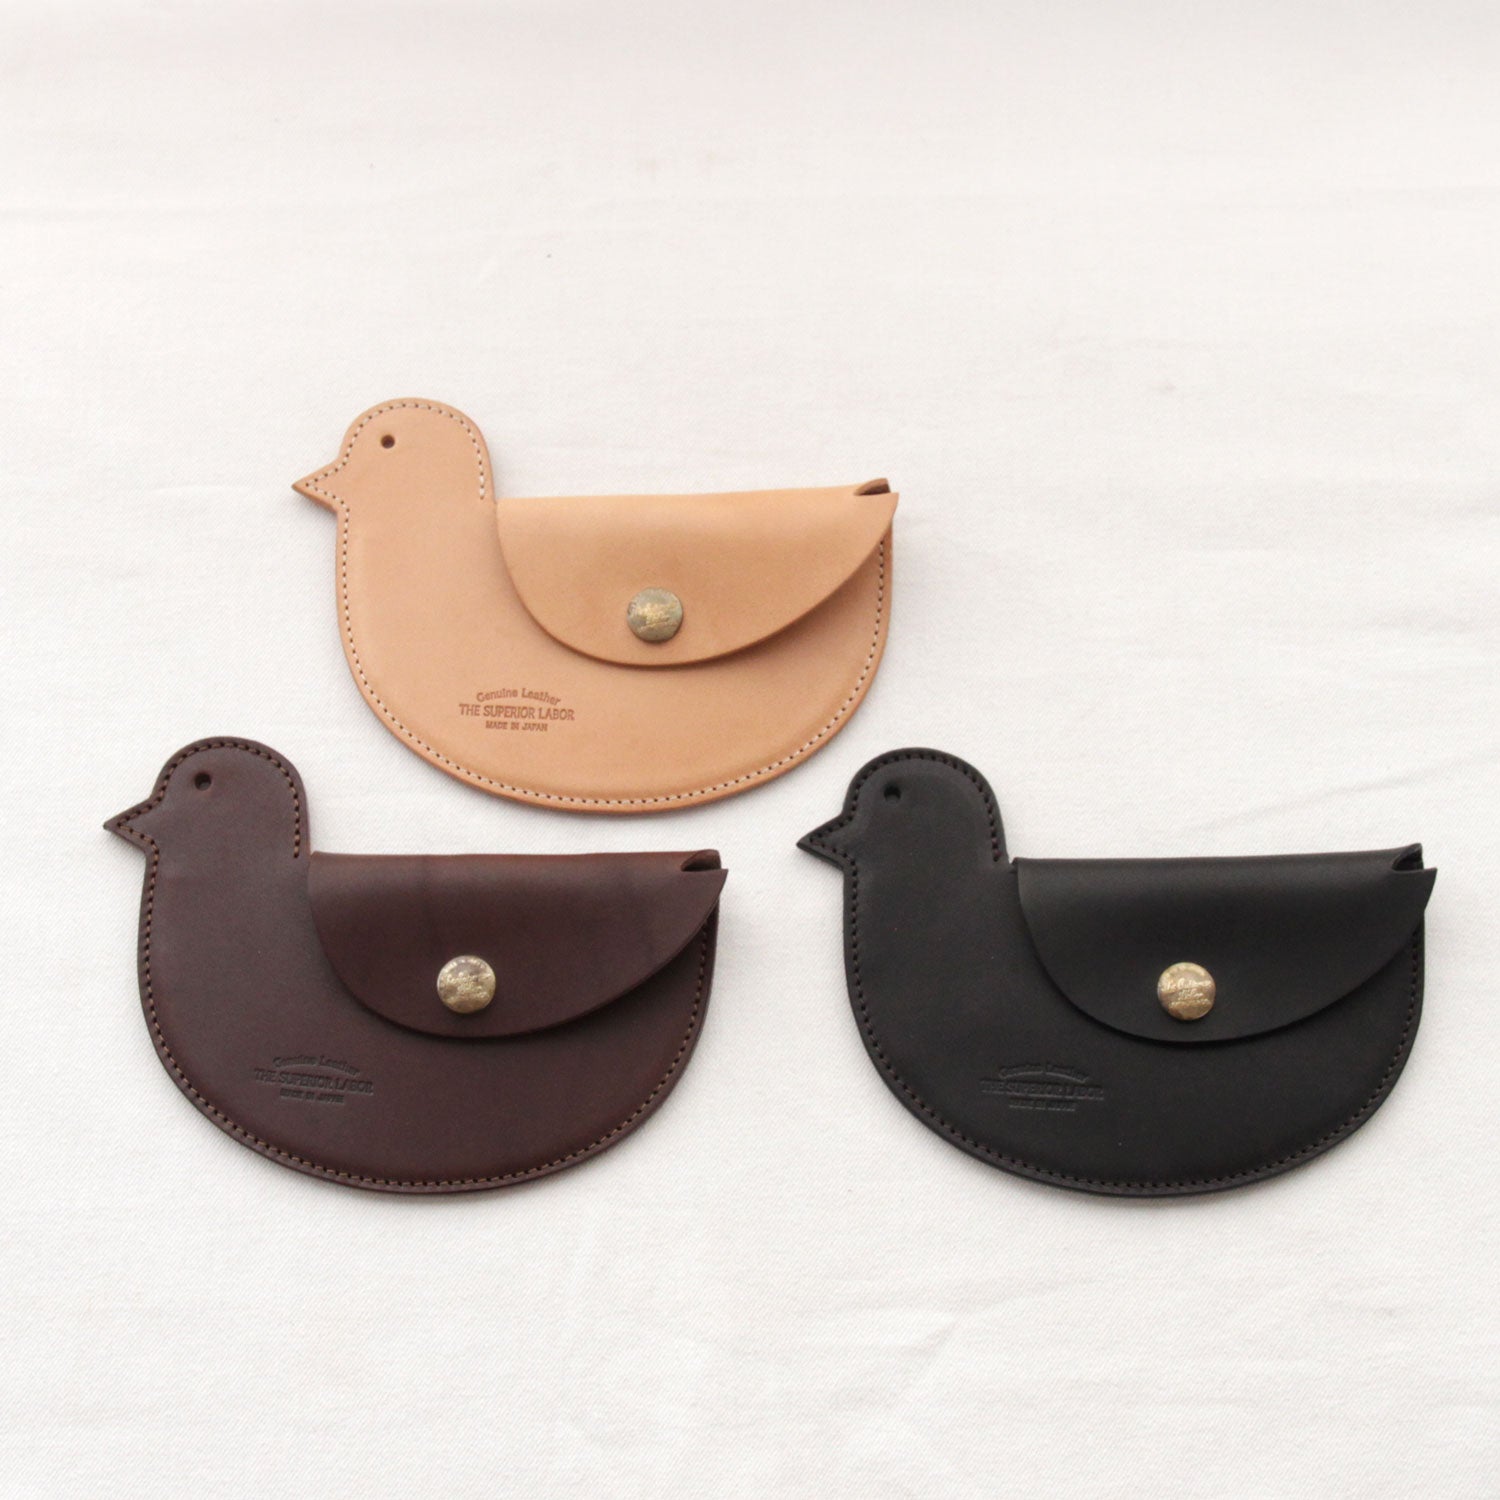 SL0133 bird purse